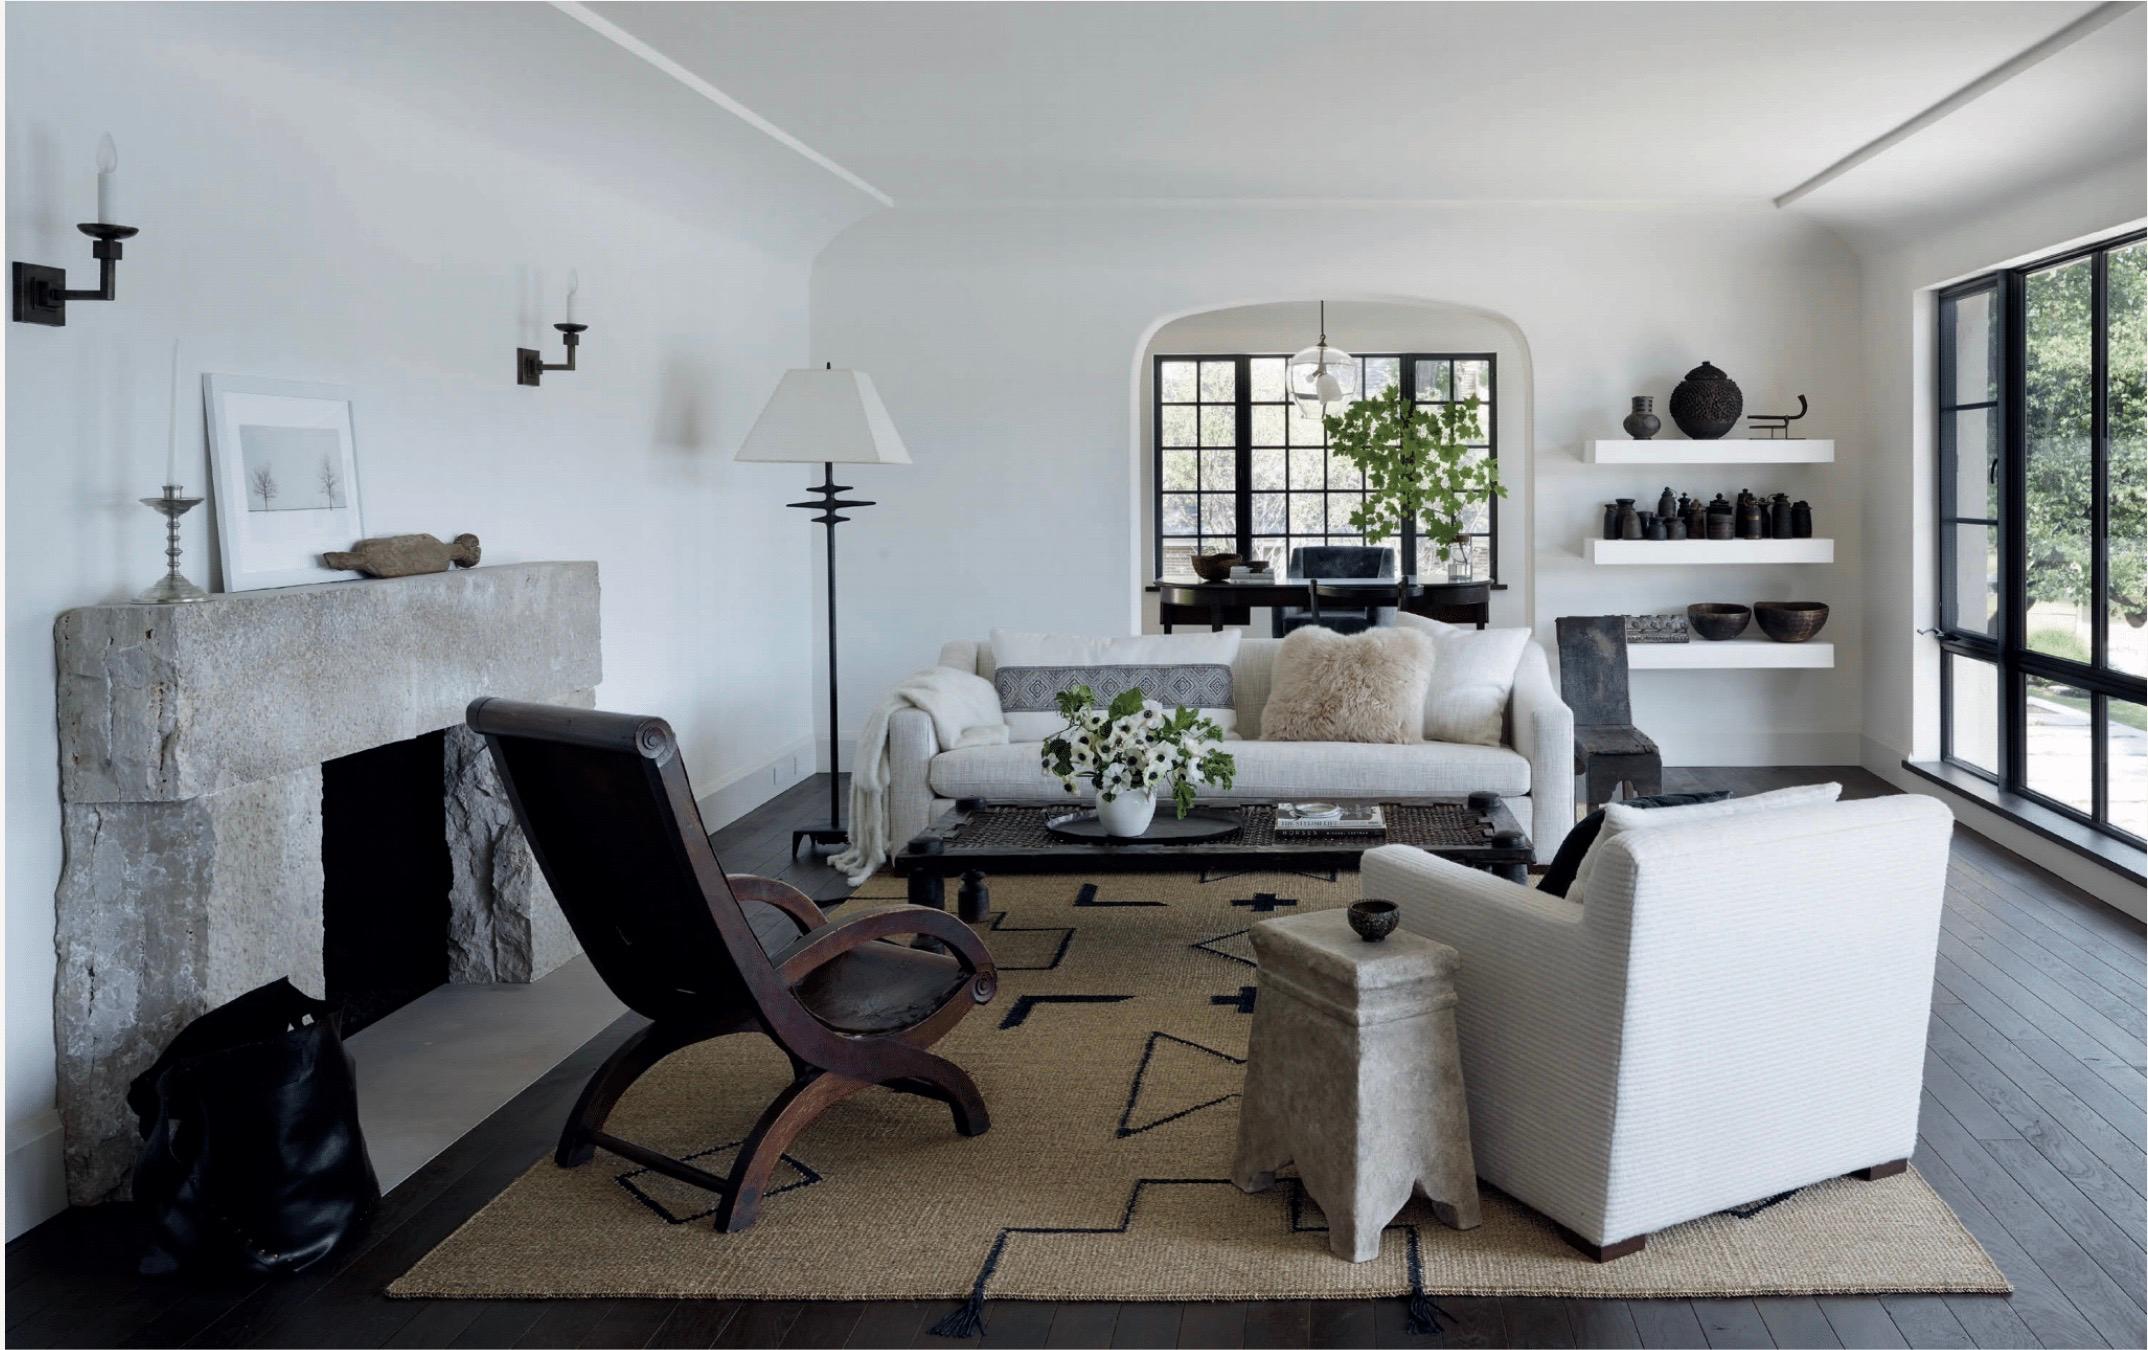 Die von Michael Del Piero gestalteten Innenräume sind voller reizvoller Widersprüche. Sie entwirft minimalistische ROOMS mit historischem Charakter, sorgfältig bearbeitete galerieähnliche Räume, die dennoch die behagliche Wärme eines Zuhauses